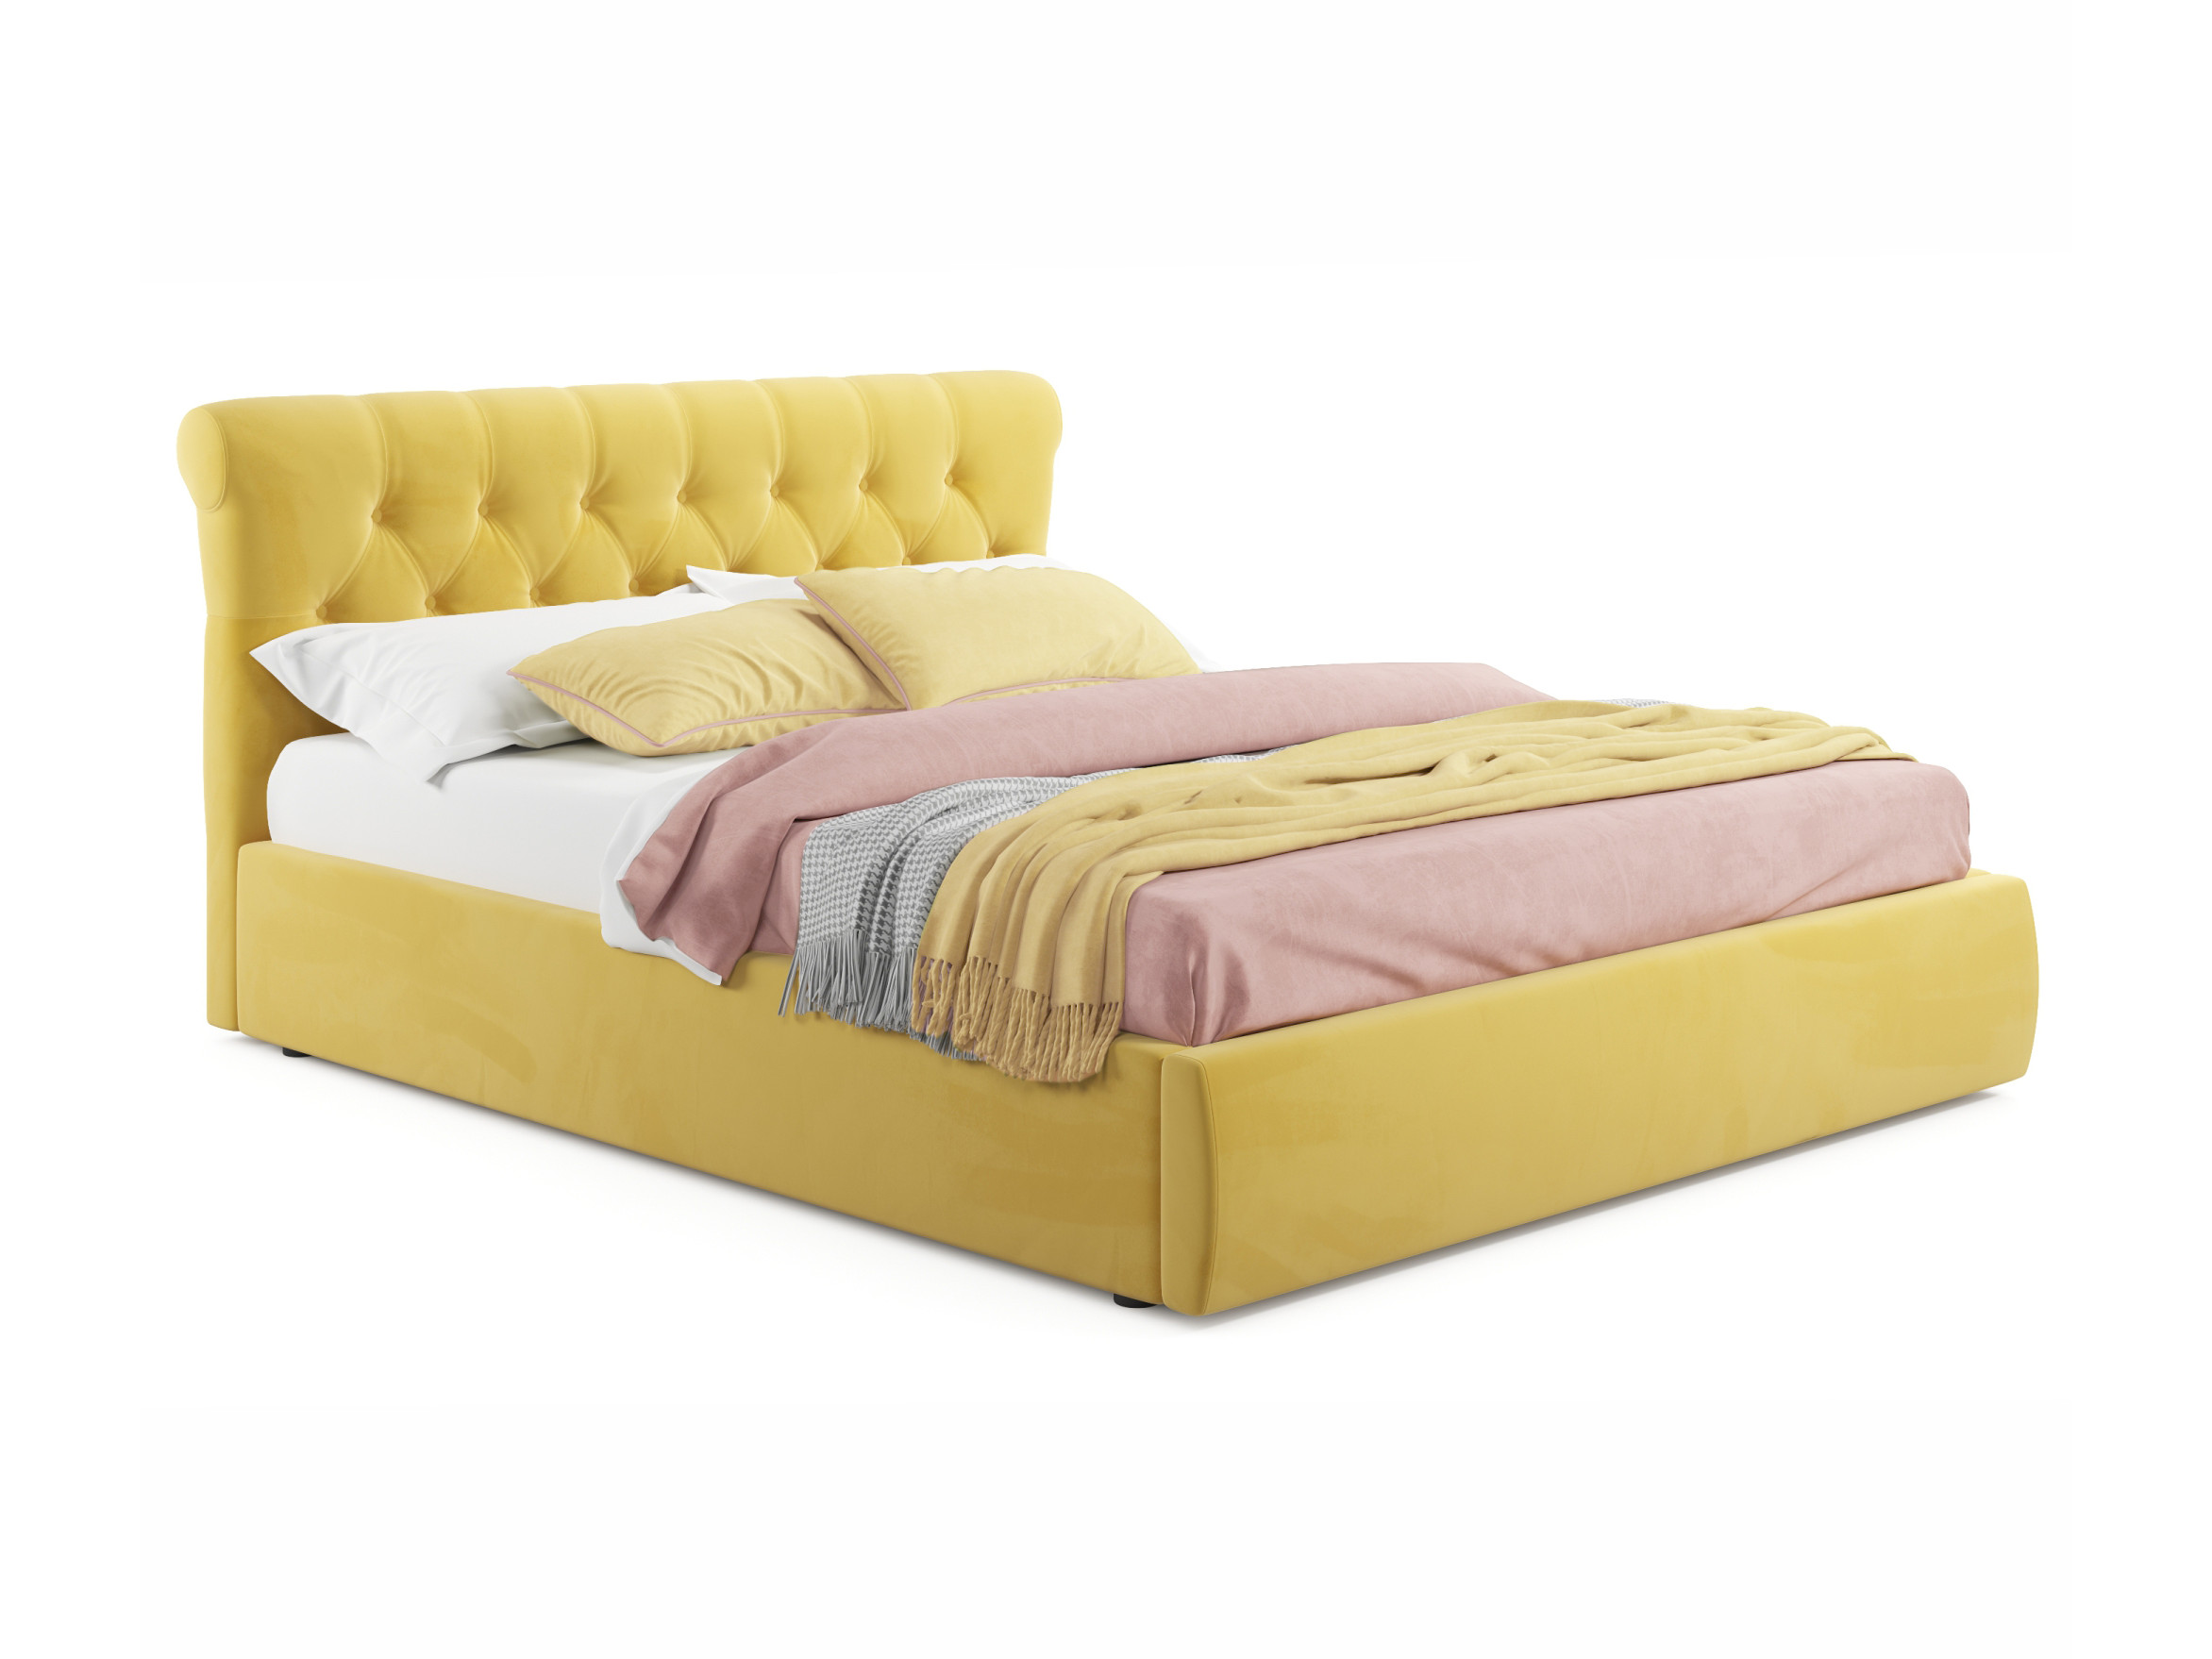 Мягкая кровать Ameli 1800 желтая с ортопедическим основанием желтый, Желтый, Велюр, ДСП мягкая кровать ameli 1400 желтая с ортопедическим основанием желтый желтый велюр дсп